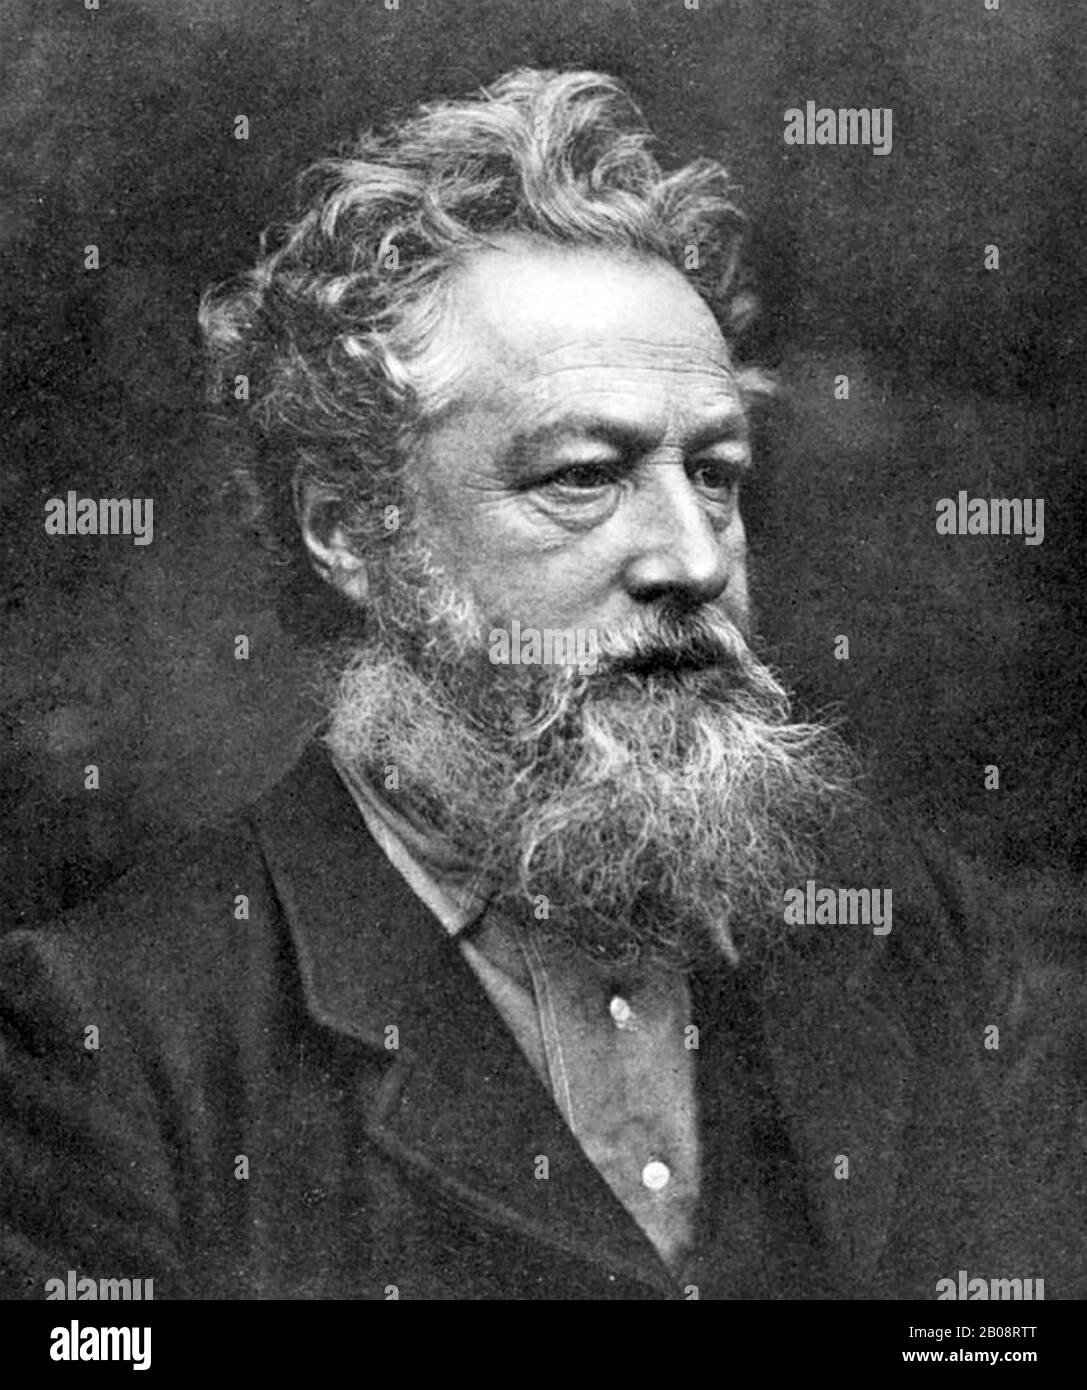 William MORRIS (1834-1896) englischer Textildesigner, Dichter und Romanautor um das Jahr 1888 Stockfoto